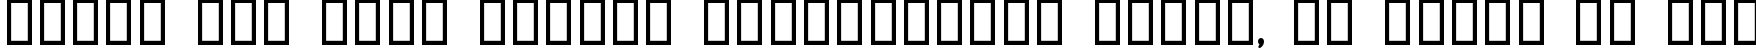 Пример написания шрифтом Jerusalem Bold текста на русском